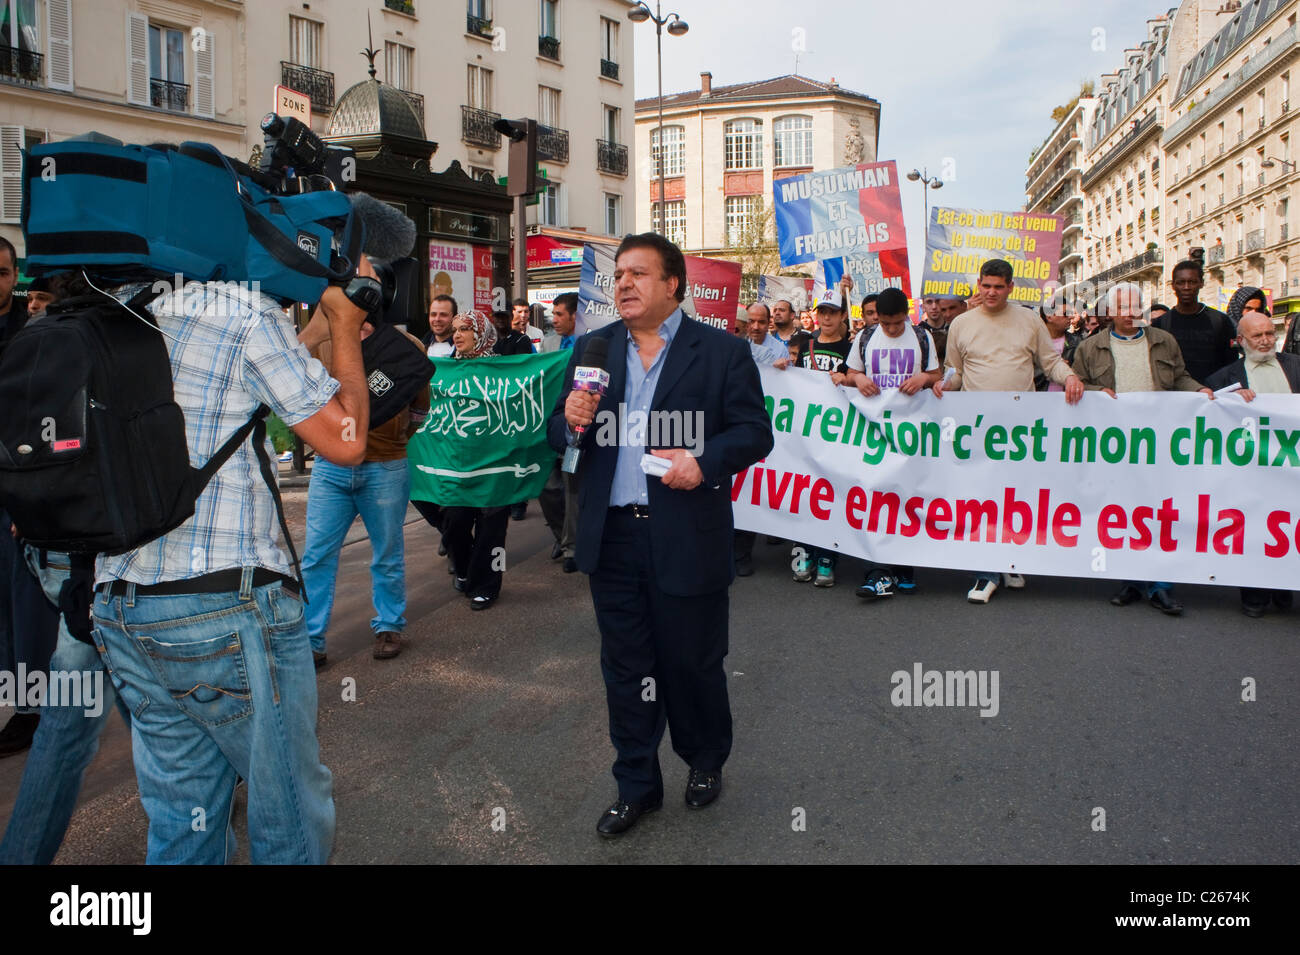 Parigi, Francia, gruppi musulmani che dimostrano contro l'islamofobie, giornalista televisivo arabo che parla con microfono, contro la discriminazione Foto Stock